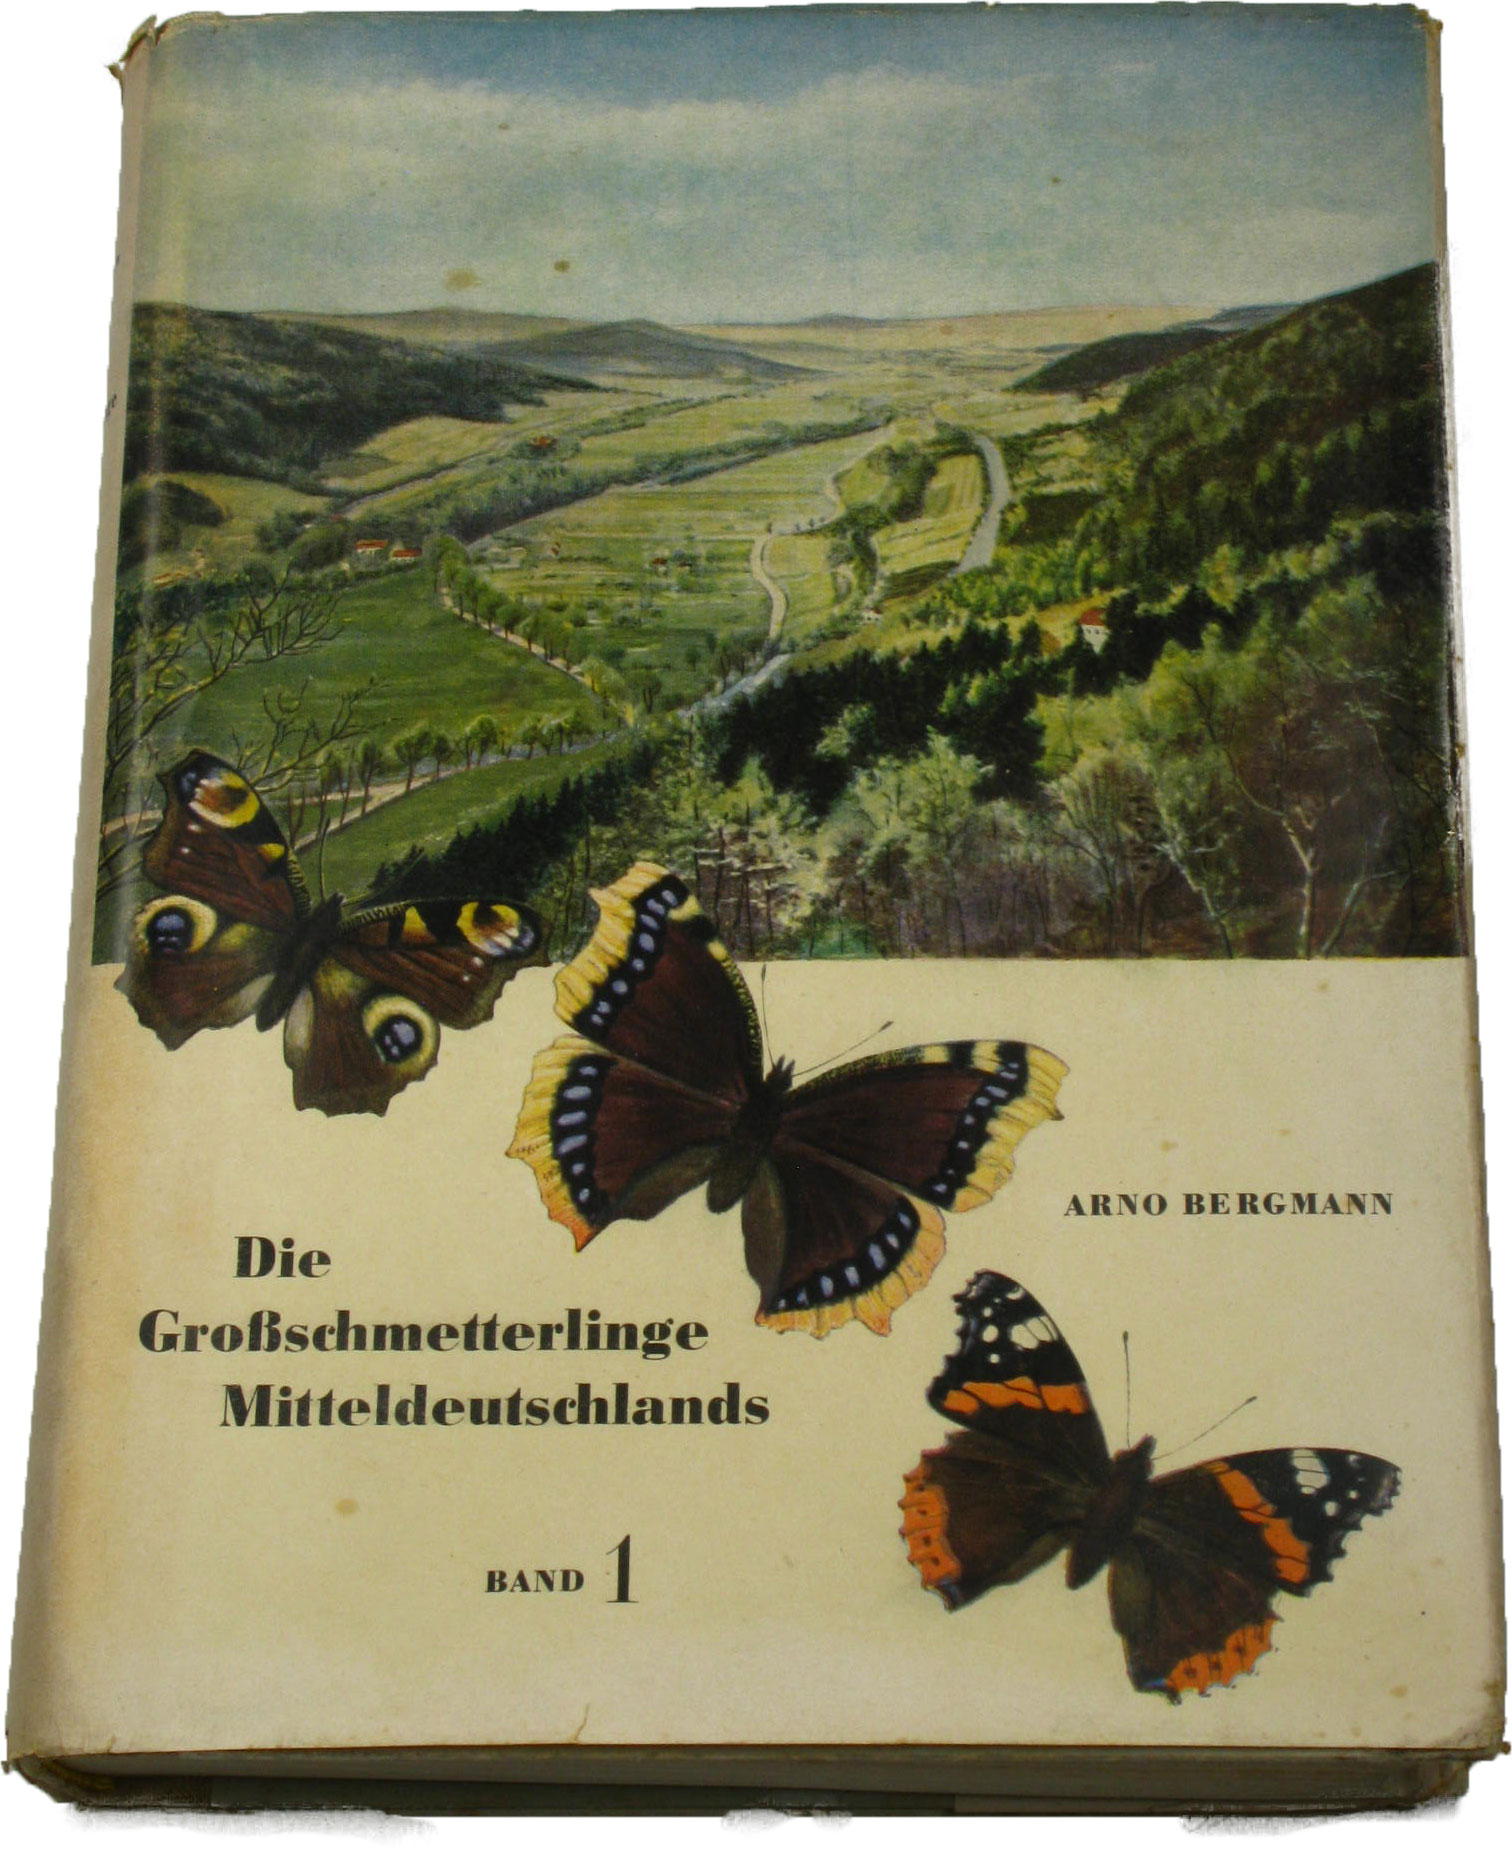 Bergmann, Arno:  Die Großschmetterlinge Mitteldeutschlands (Band 1). Die Natur Mitteldeutschlands und ihre Schmetterlingsgesellschaften. 